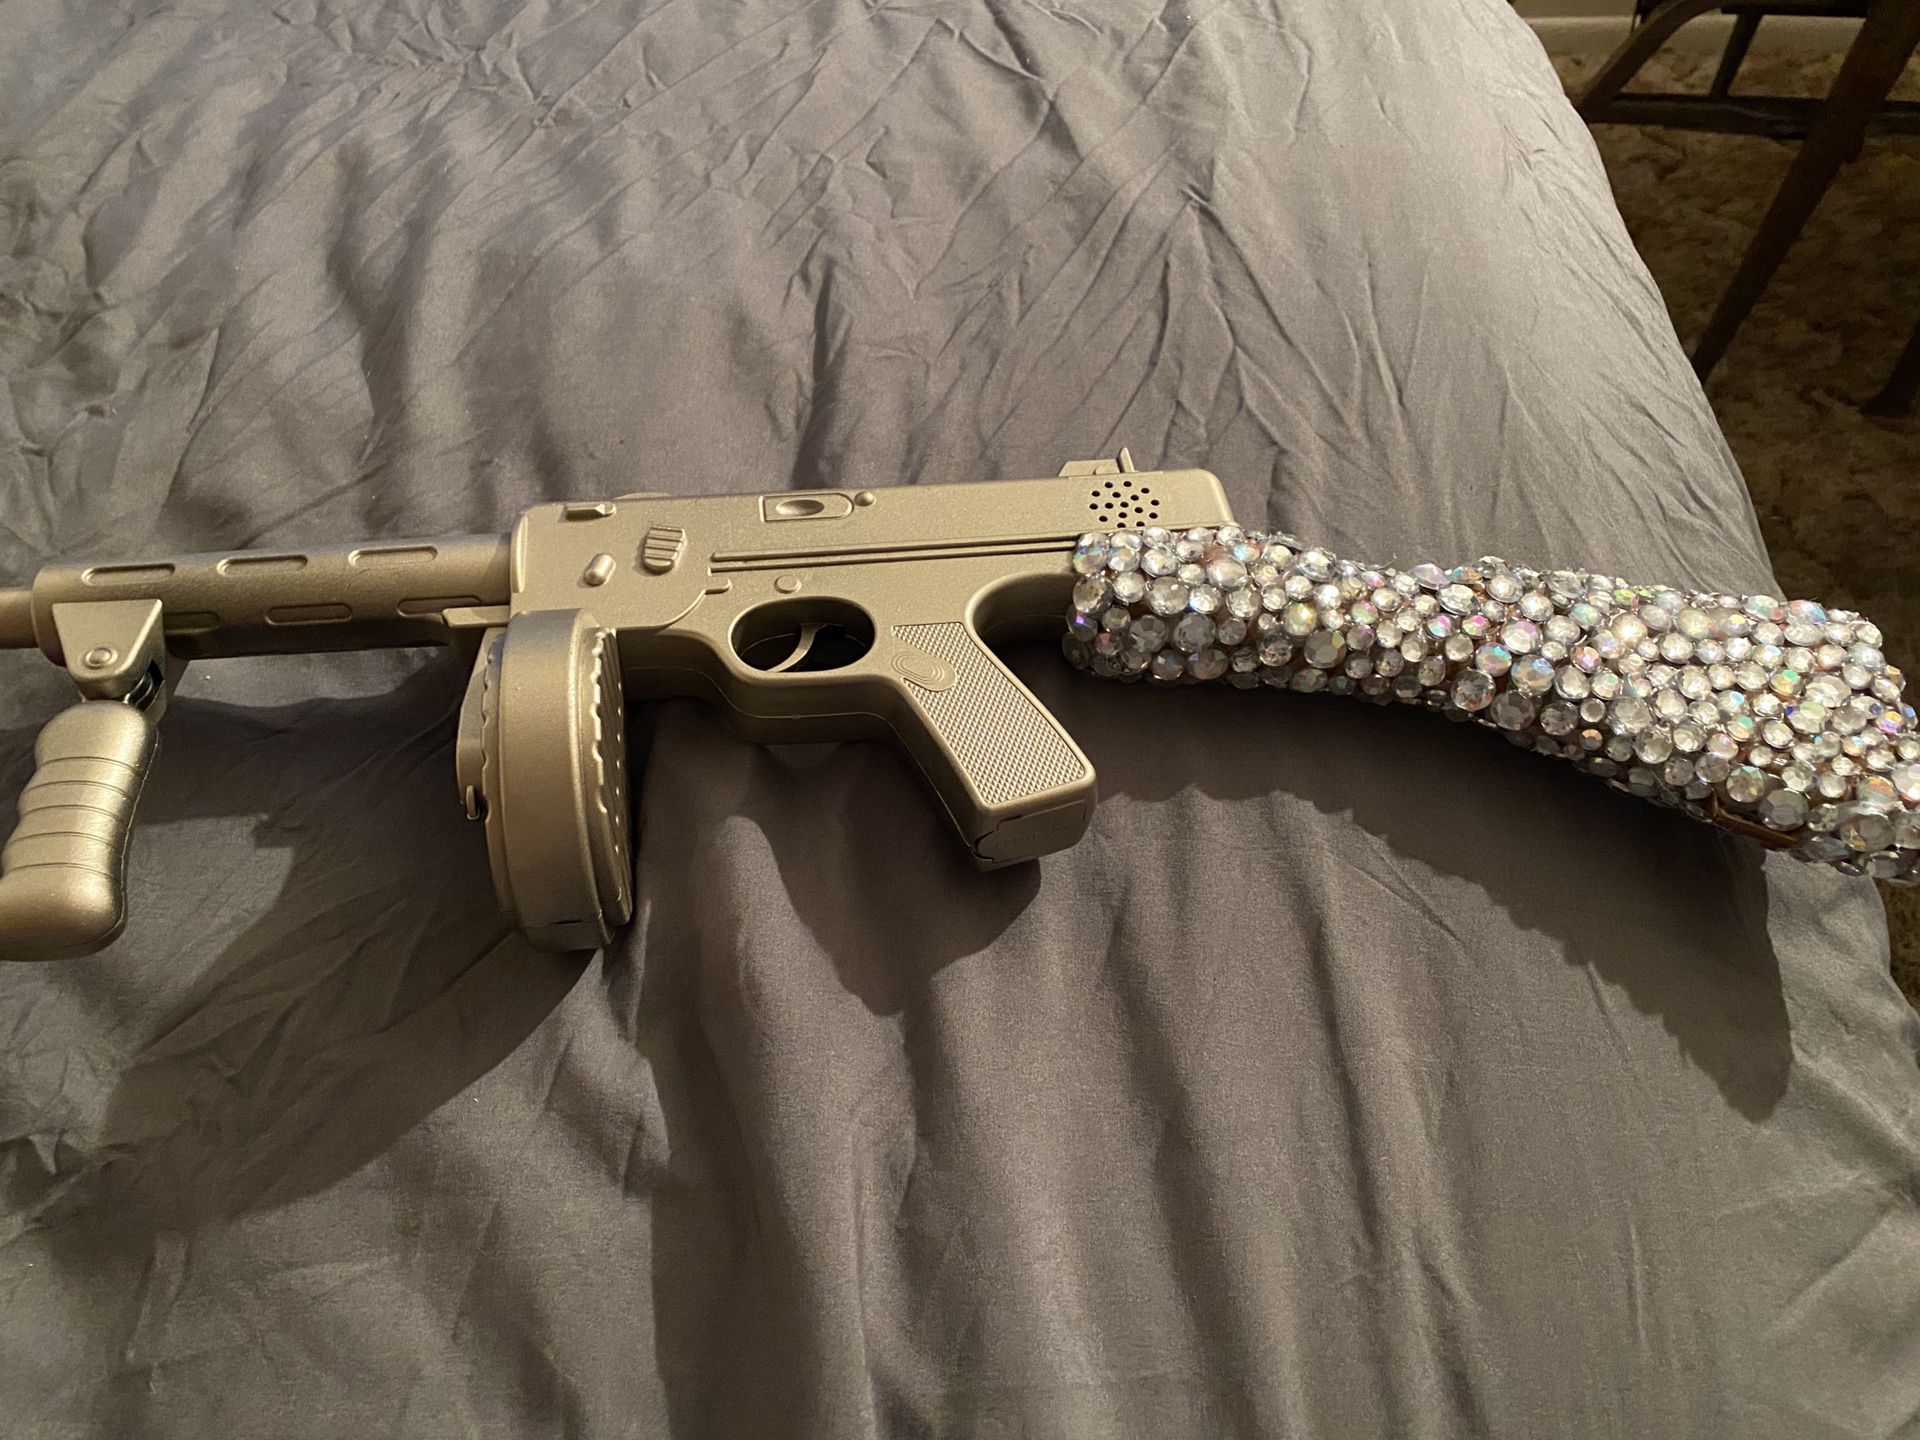 Purge candy bar girl gun